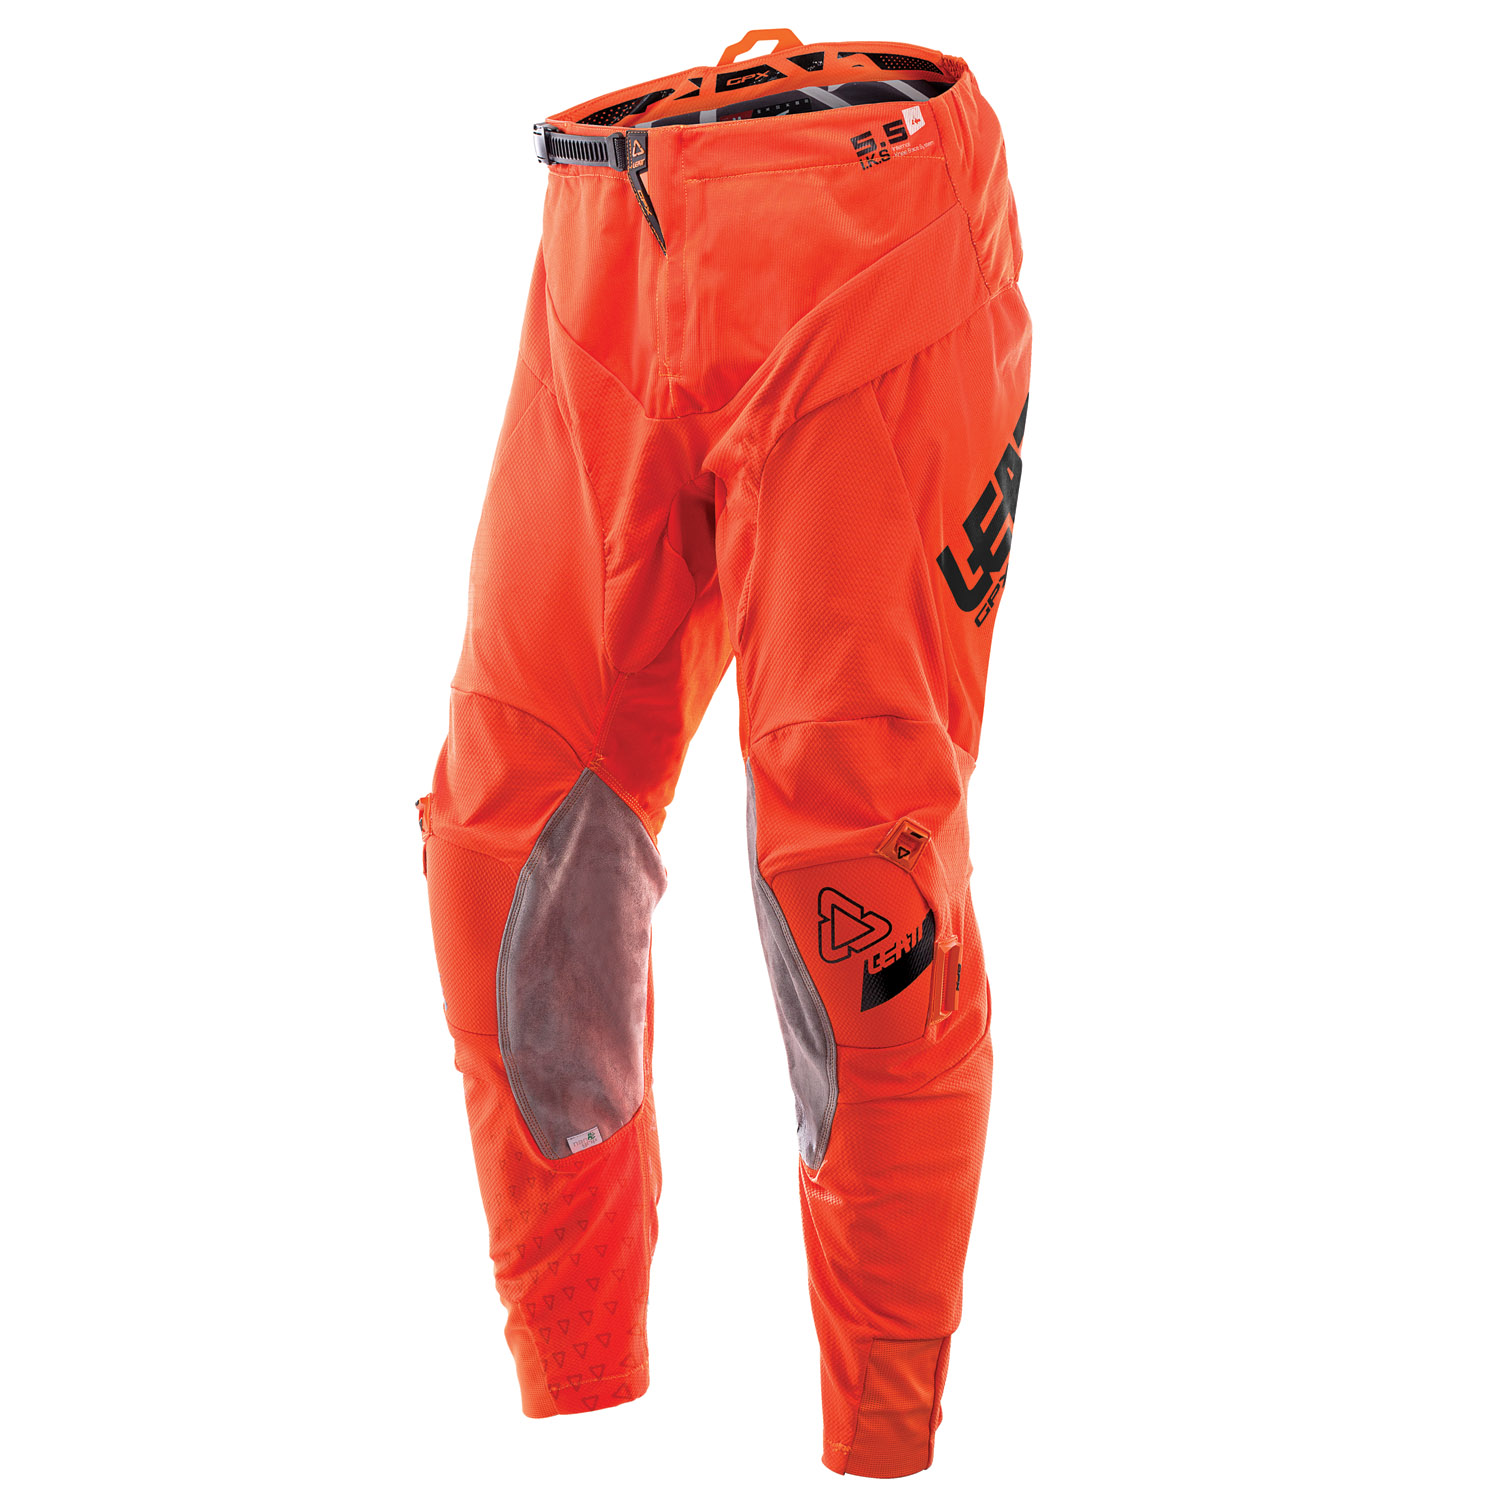 Leatt Pantalon MX GPX 5.5 I.K.S. Orange/Black